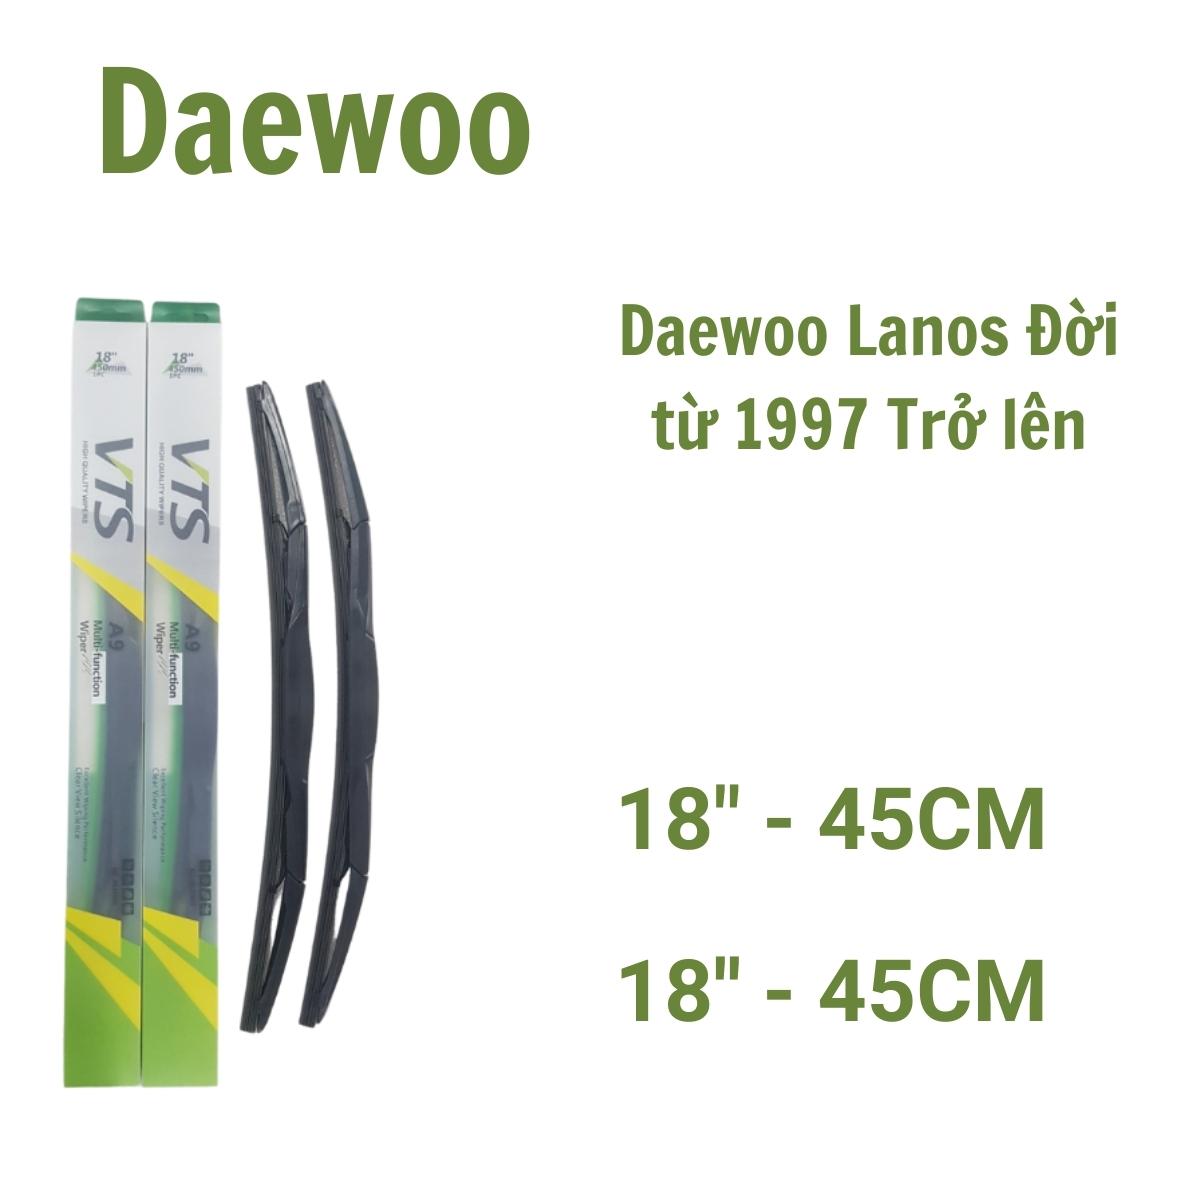 Bộ cần gạt mưa Slicon thanh 3 khúc A9 dành cho xe Daewoo: Lacetti EX,Gentra, Matiz.. và các dòng khác hãng Daewoo - Hàng nhập khẩu